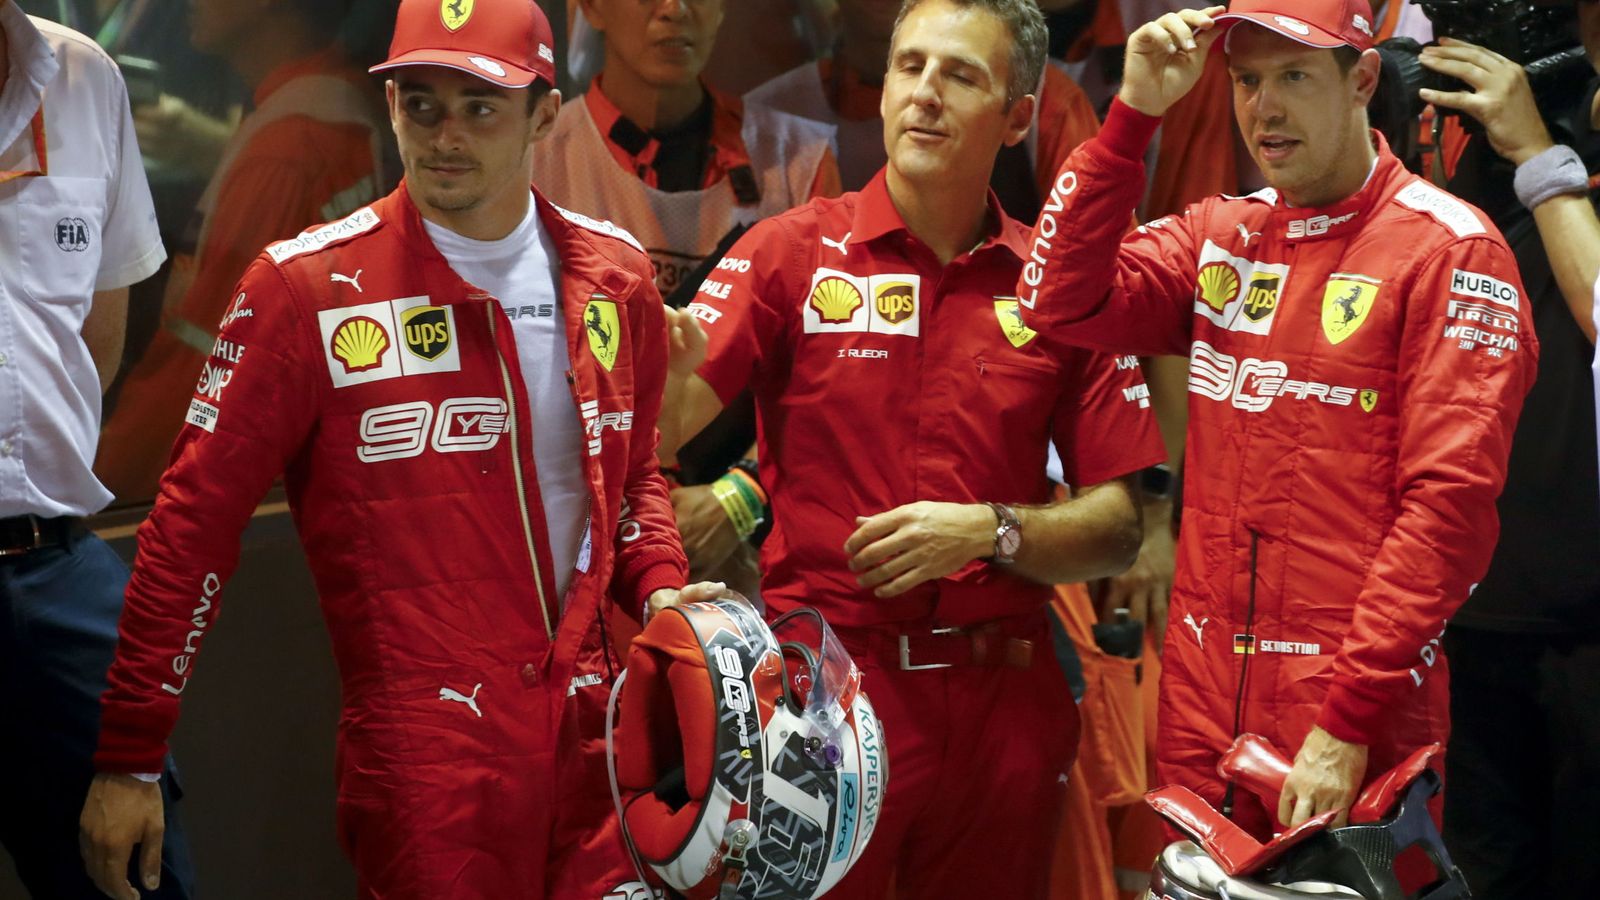 Foto: La estrategia favoreció a un Vettel que lideró el doblete de Ferrari en Singapur. (EFE)